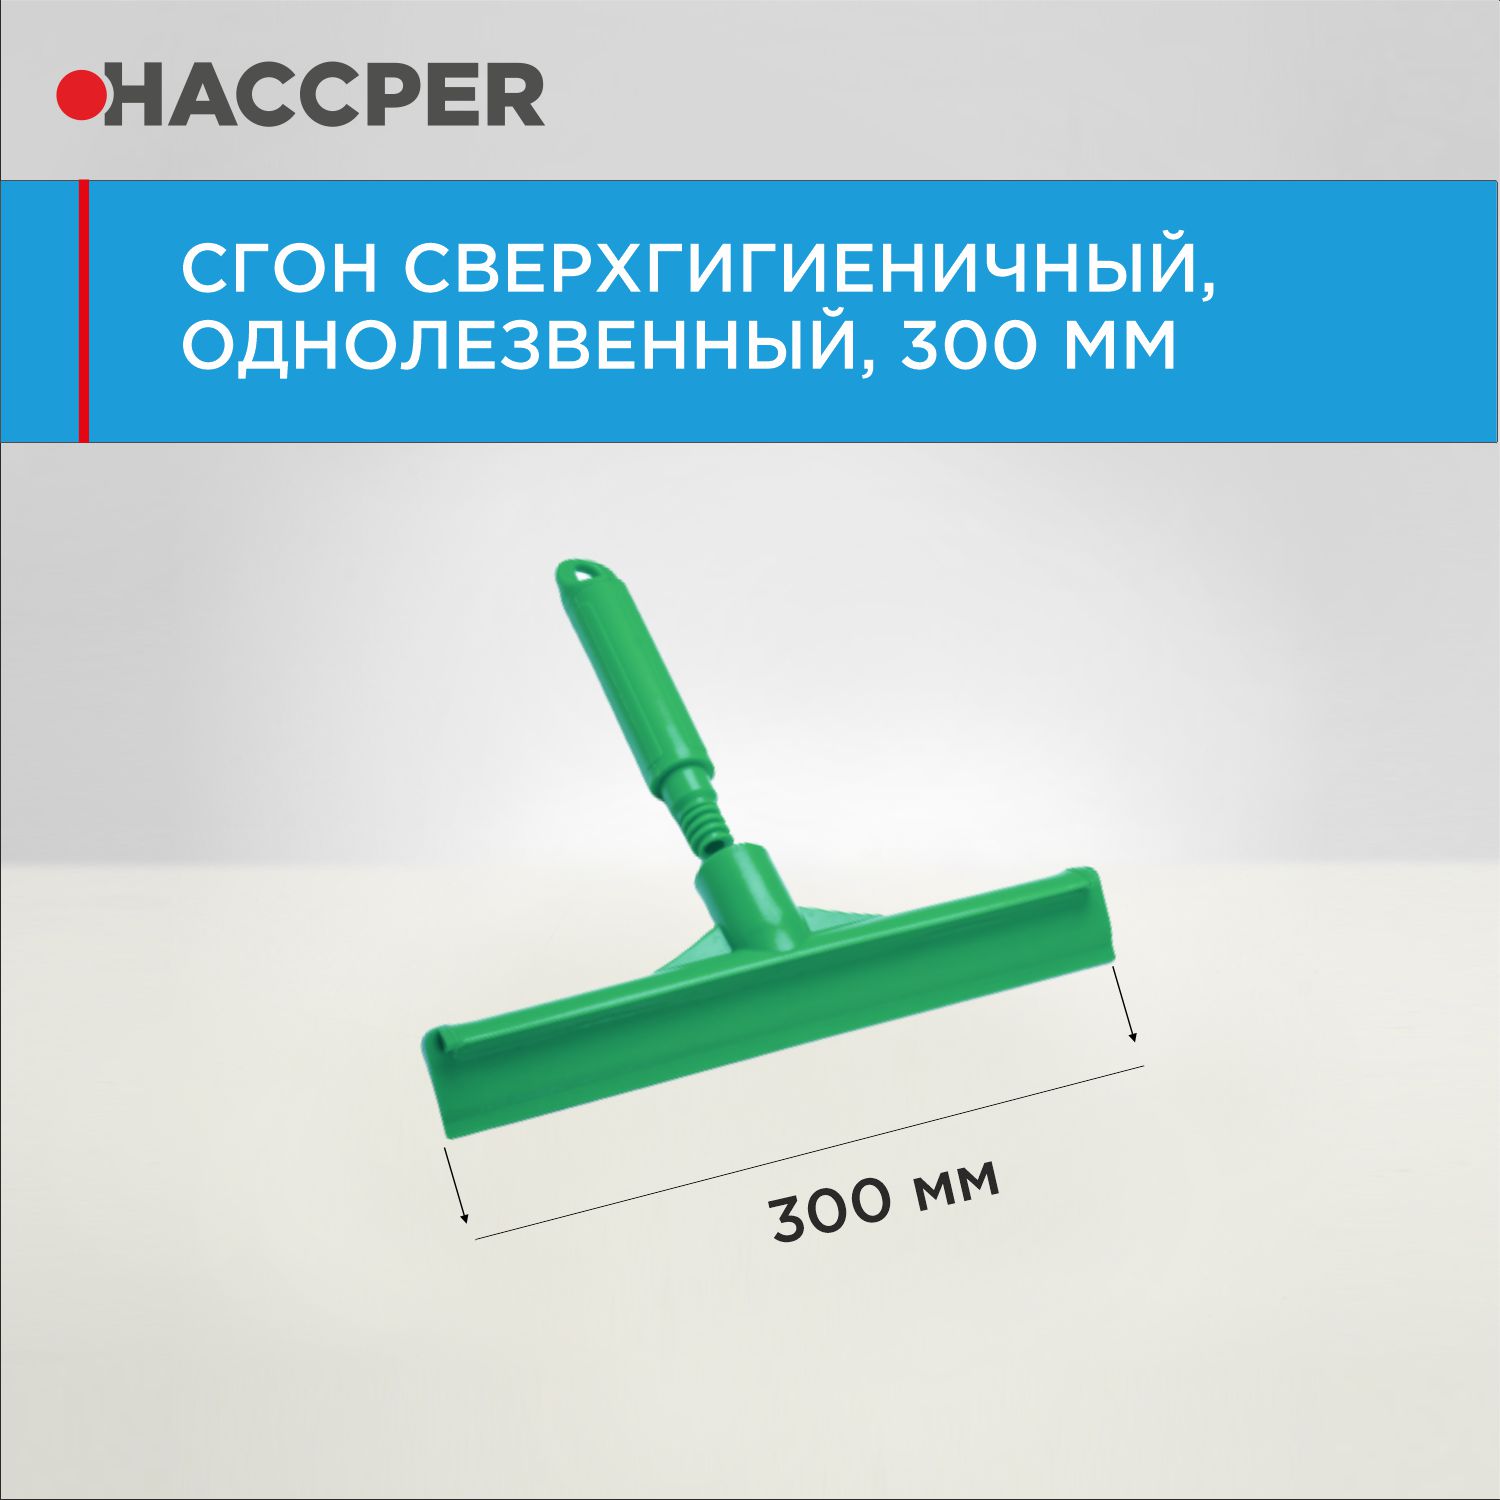 Сгон HACCPER сверхгигиеничный ручной однолезвенный с мини-рукояткой, 300 мм, зеленый